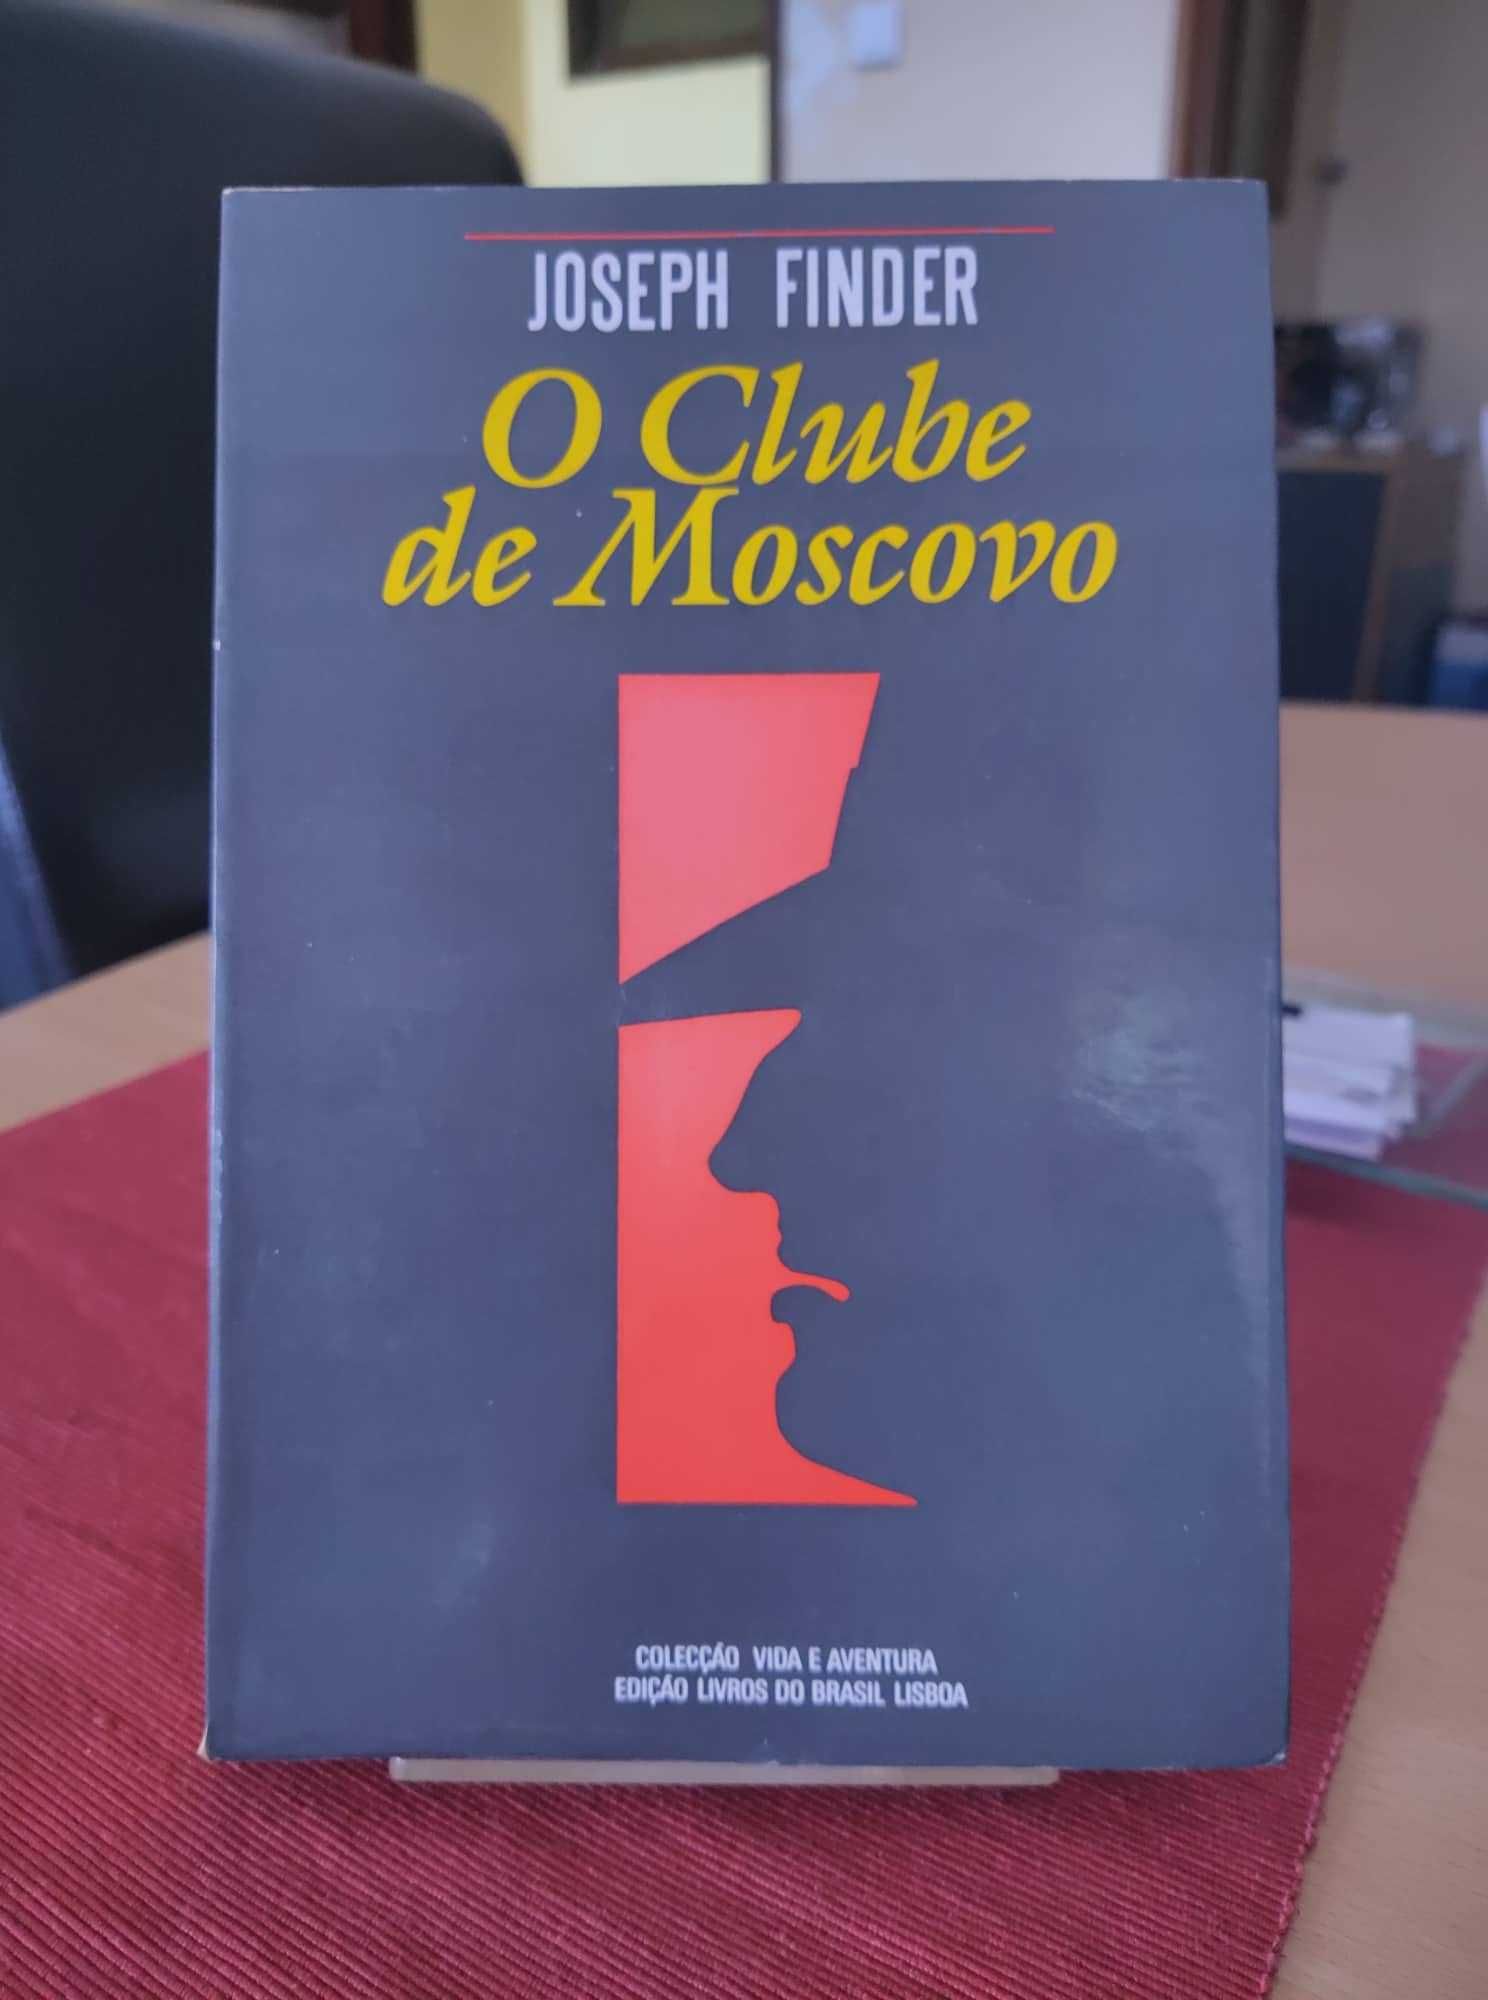 Livro “O clube de Moscovo”